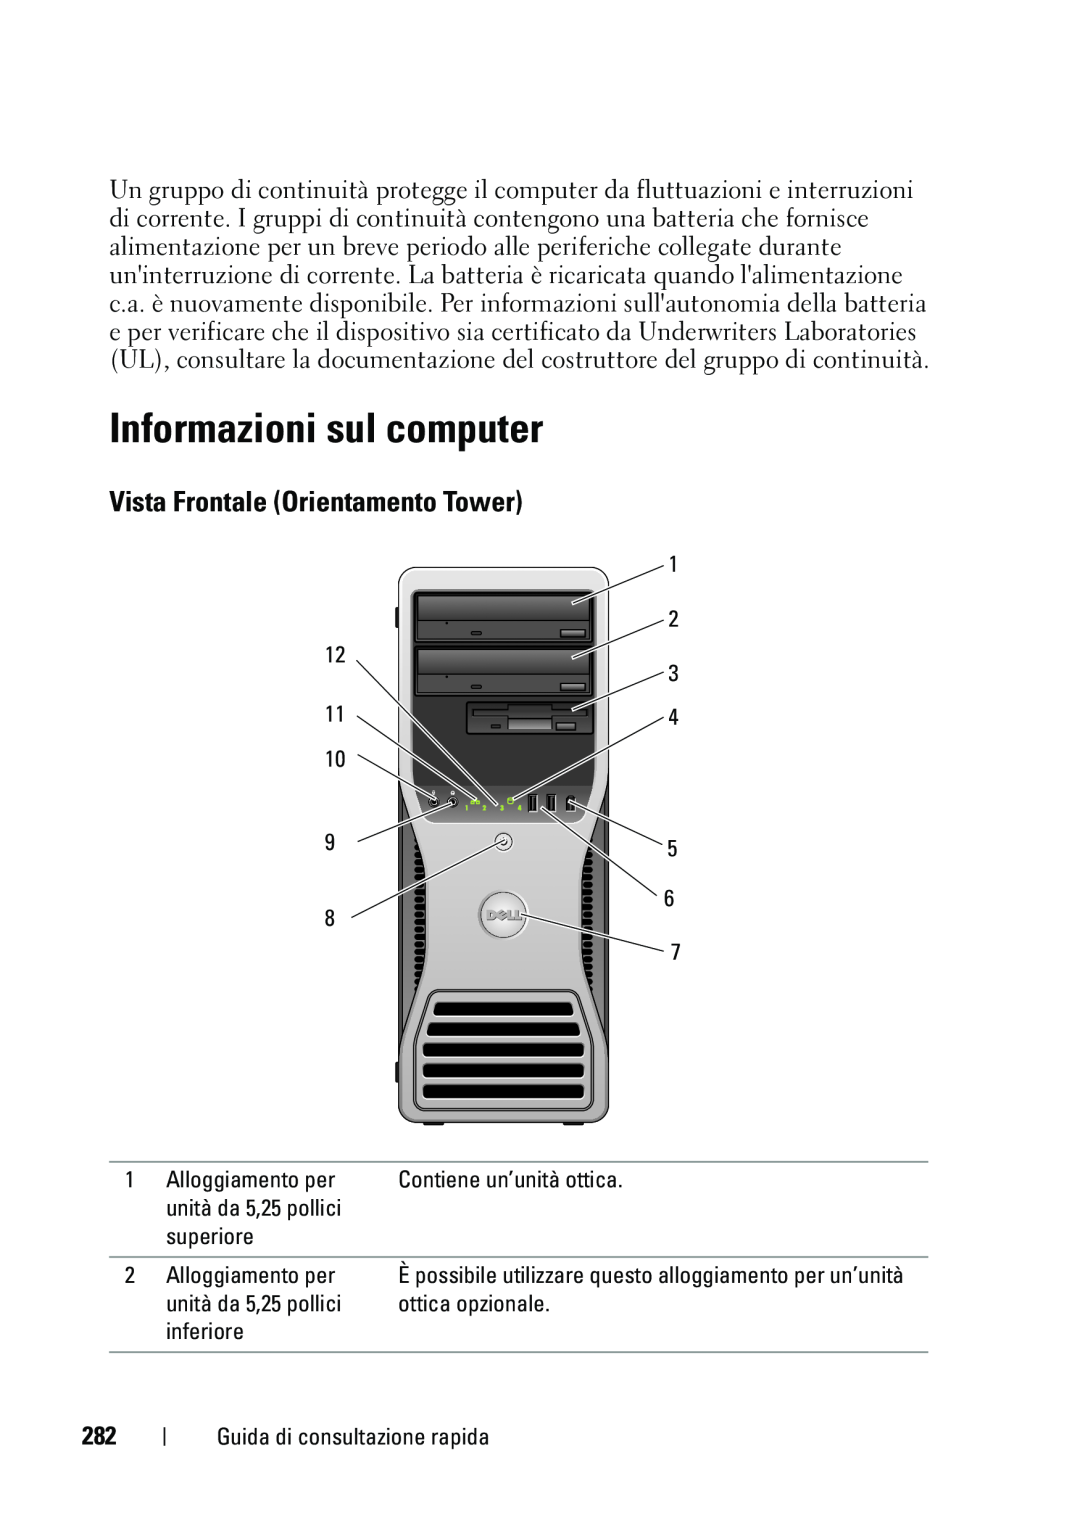 Dell T5400 manual Informazioni sul computer, Vista Frontale Orientamento Tower 